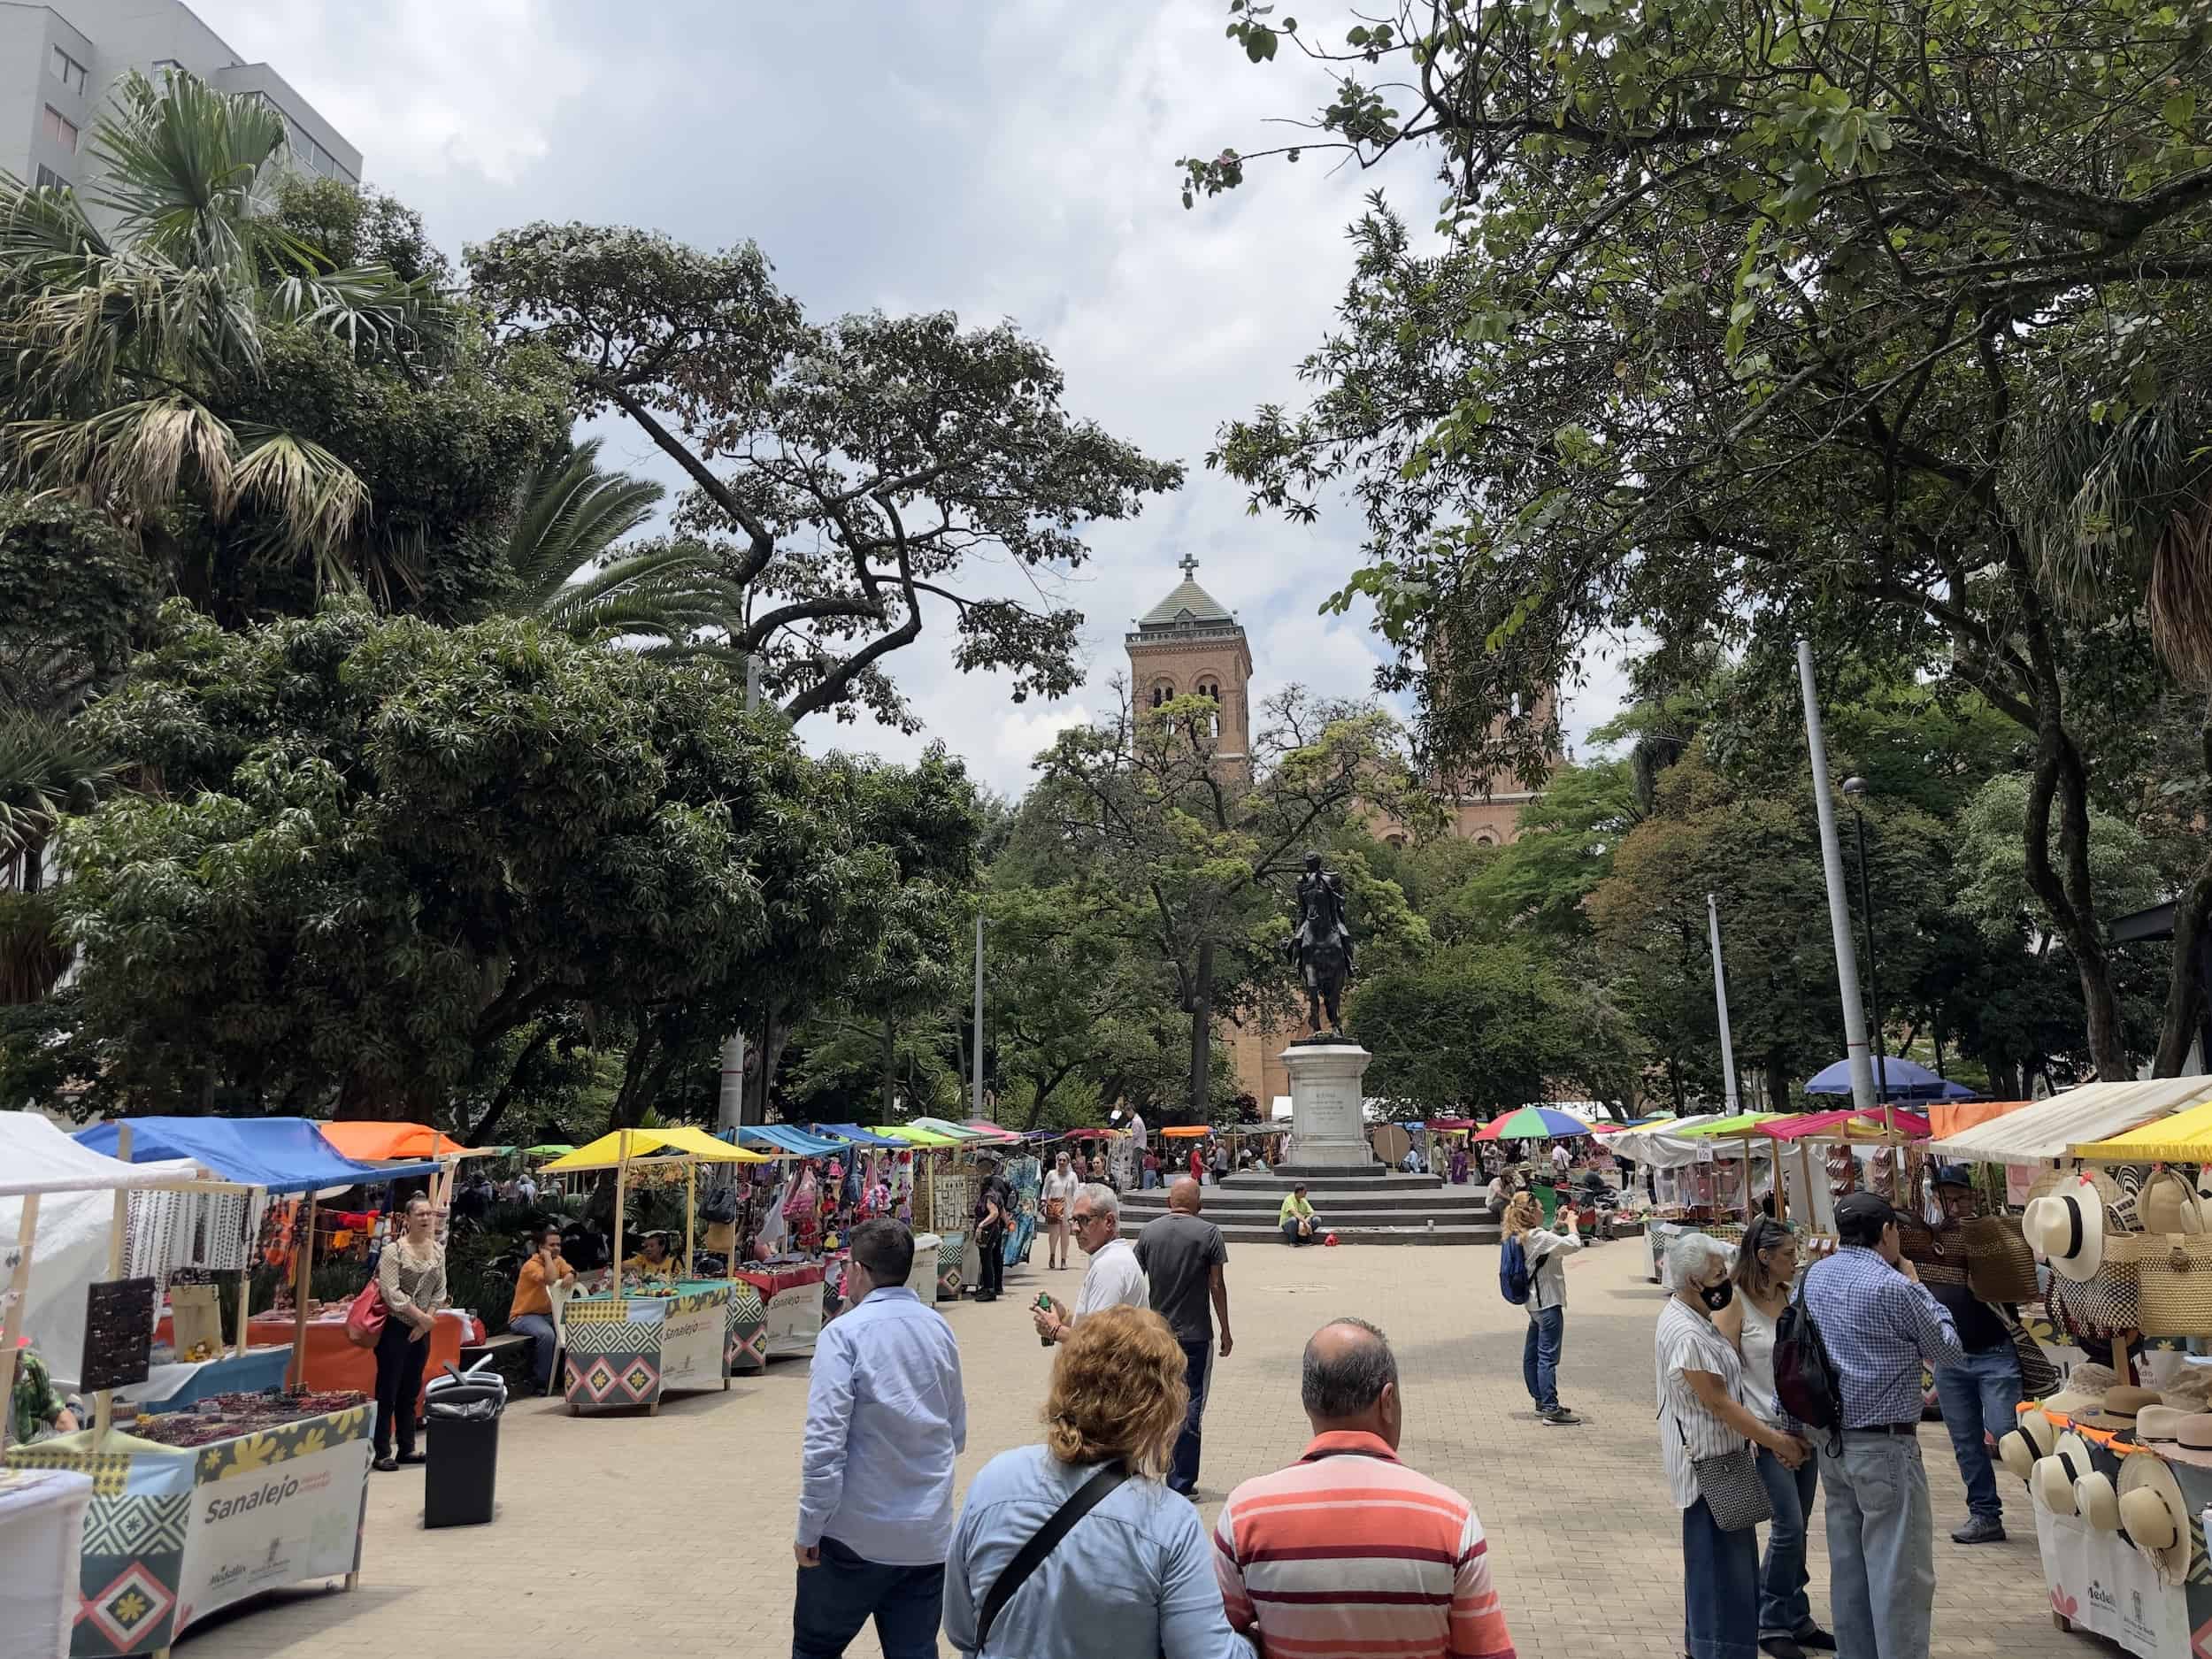 San Alejo Market at Parque Bolívar in El Centro, Medellín, Antioquia, Colombia